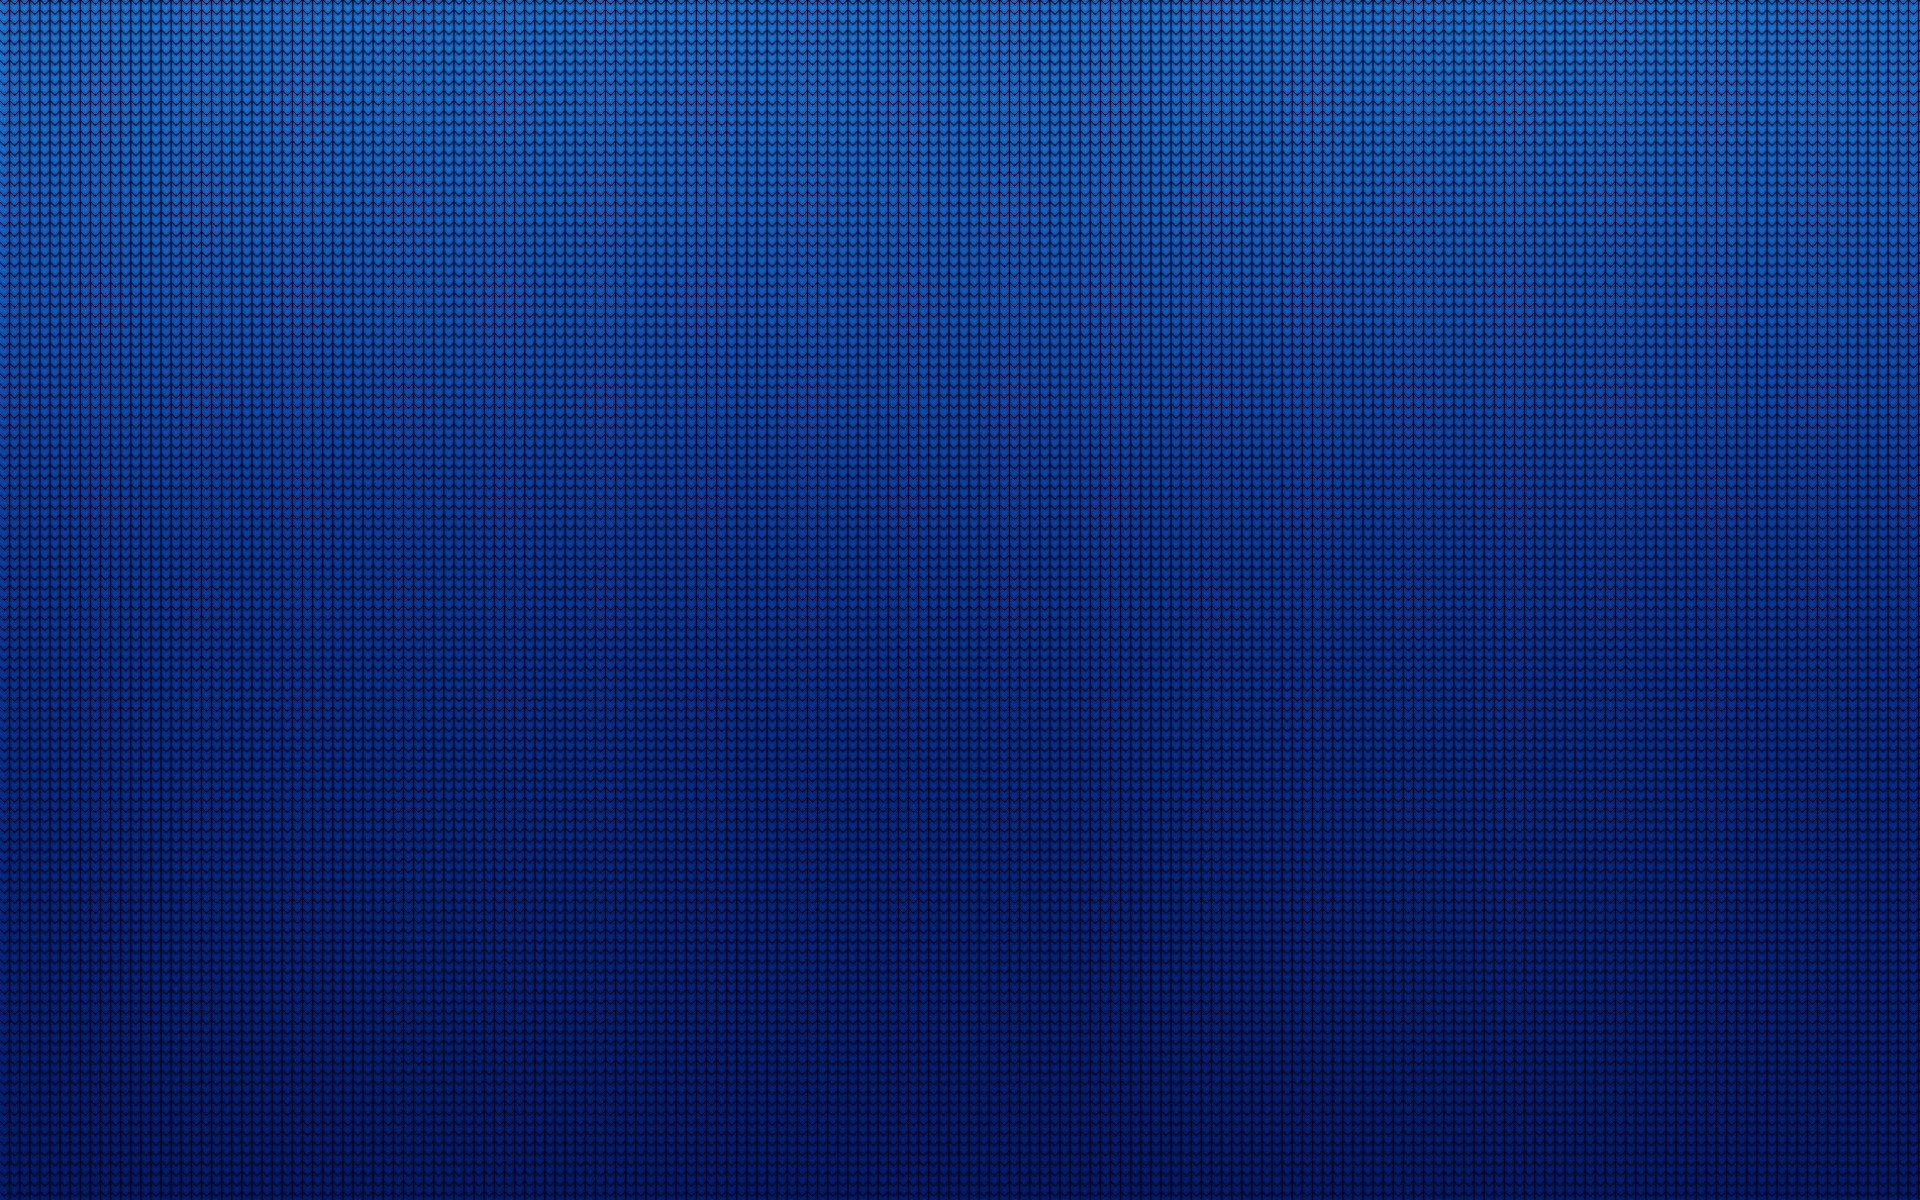 Plain Blue Background Images For Websites